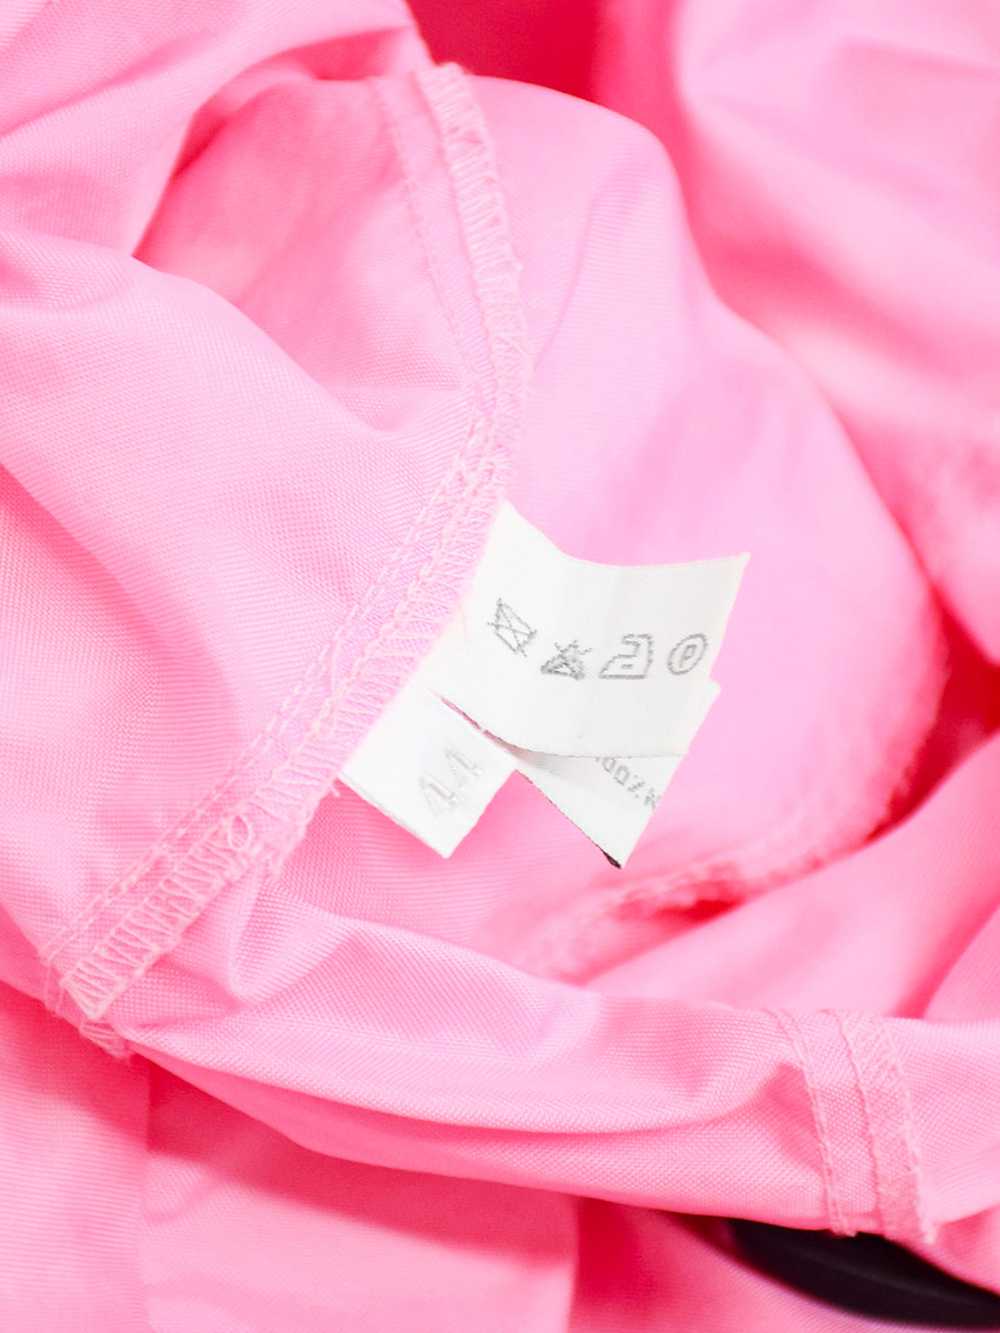 Miu Miu SS 1999 Pink Polyester Jacket - image 4